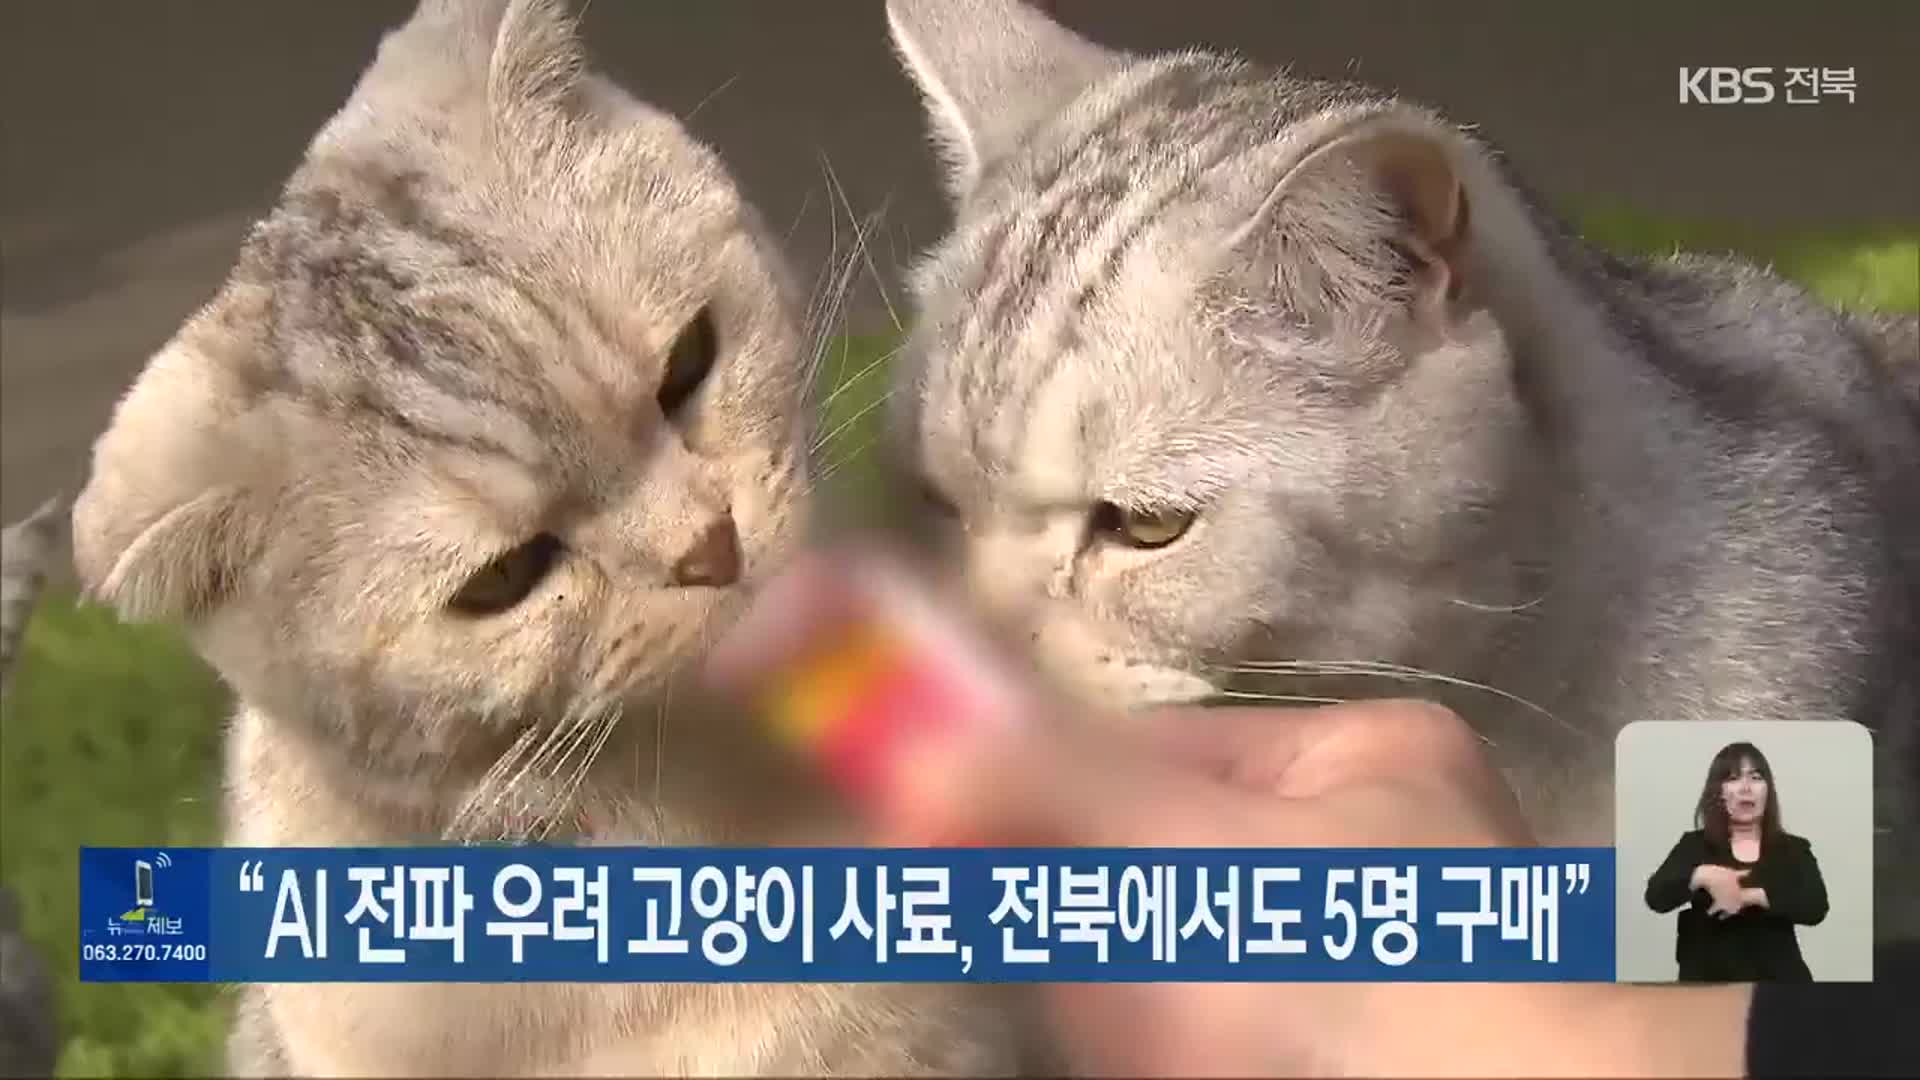 “AI 전파 우려 고양이 사료, 전북에서도 5명 구매”